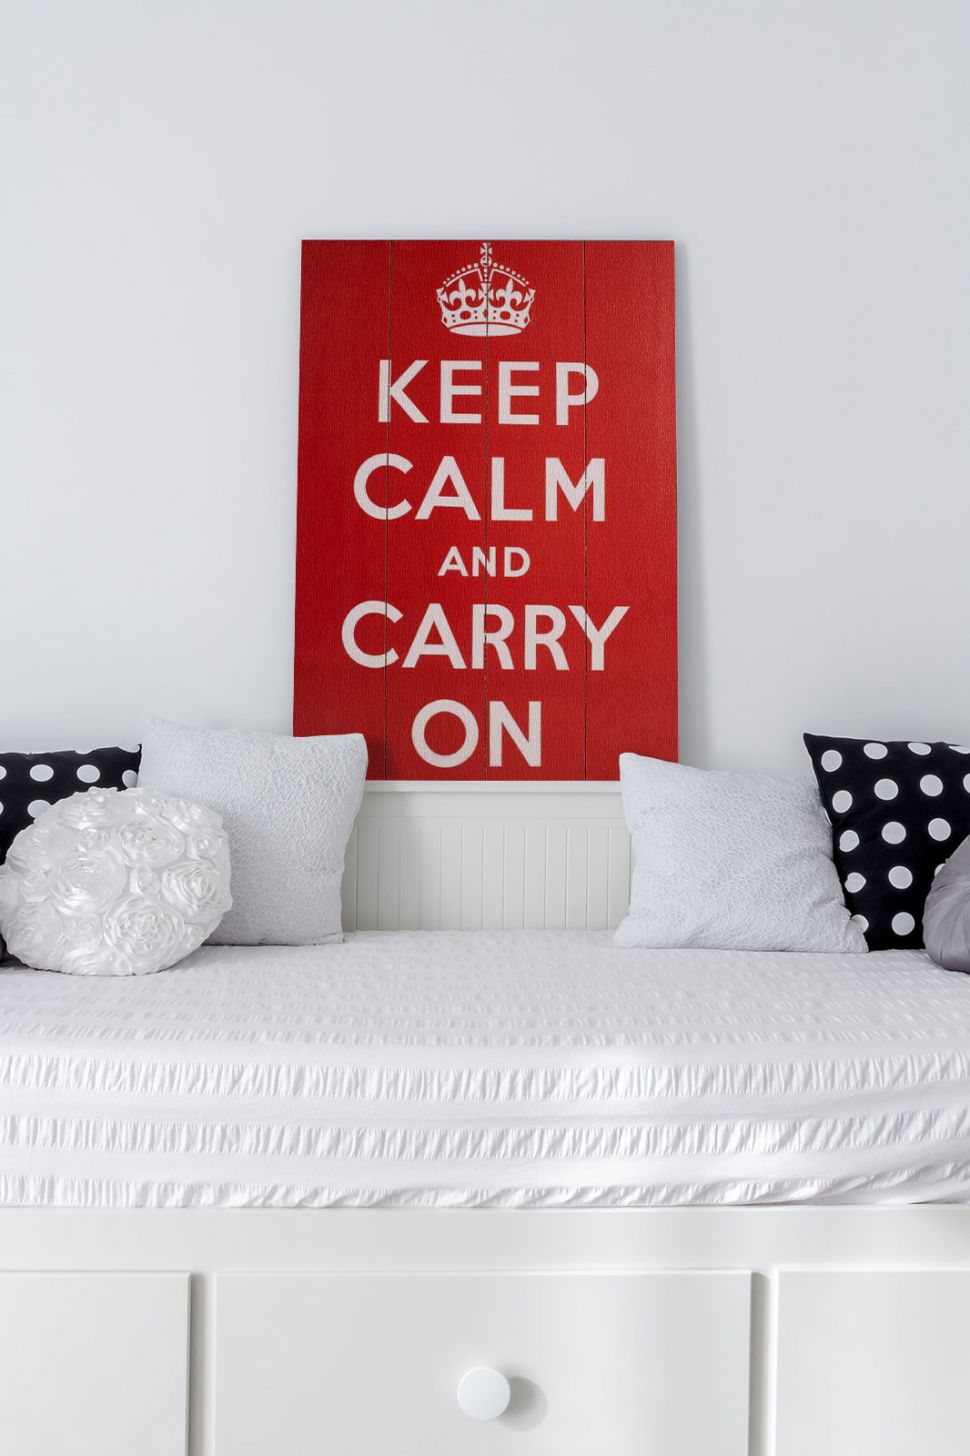 Obraz z napisami Keep Calm and Carry On wiszący na białej ścianie w pokoju